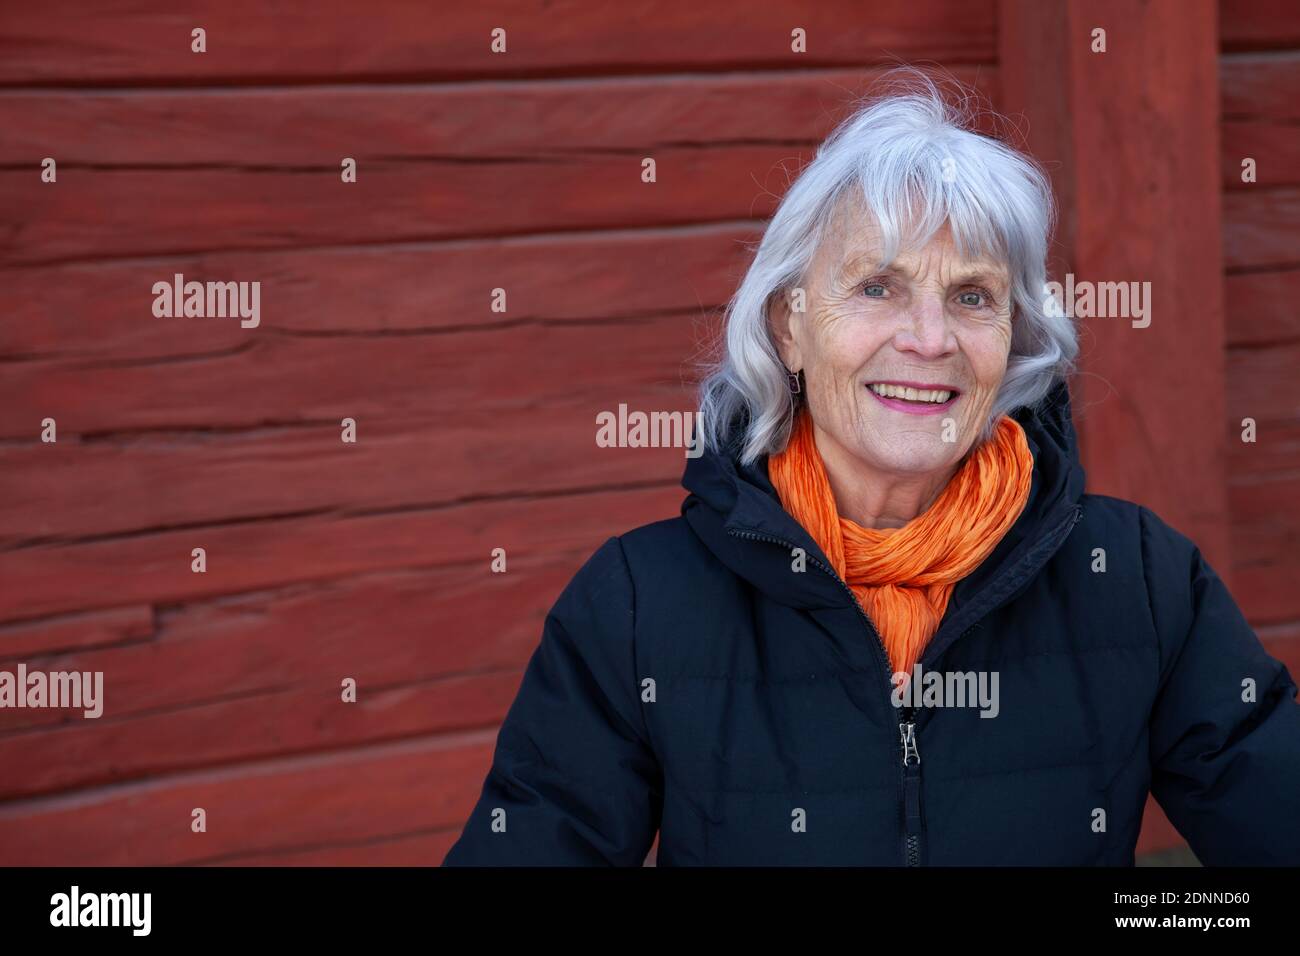 Senior woman looking at camera Stock Photo